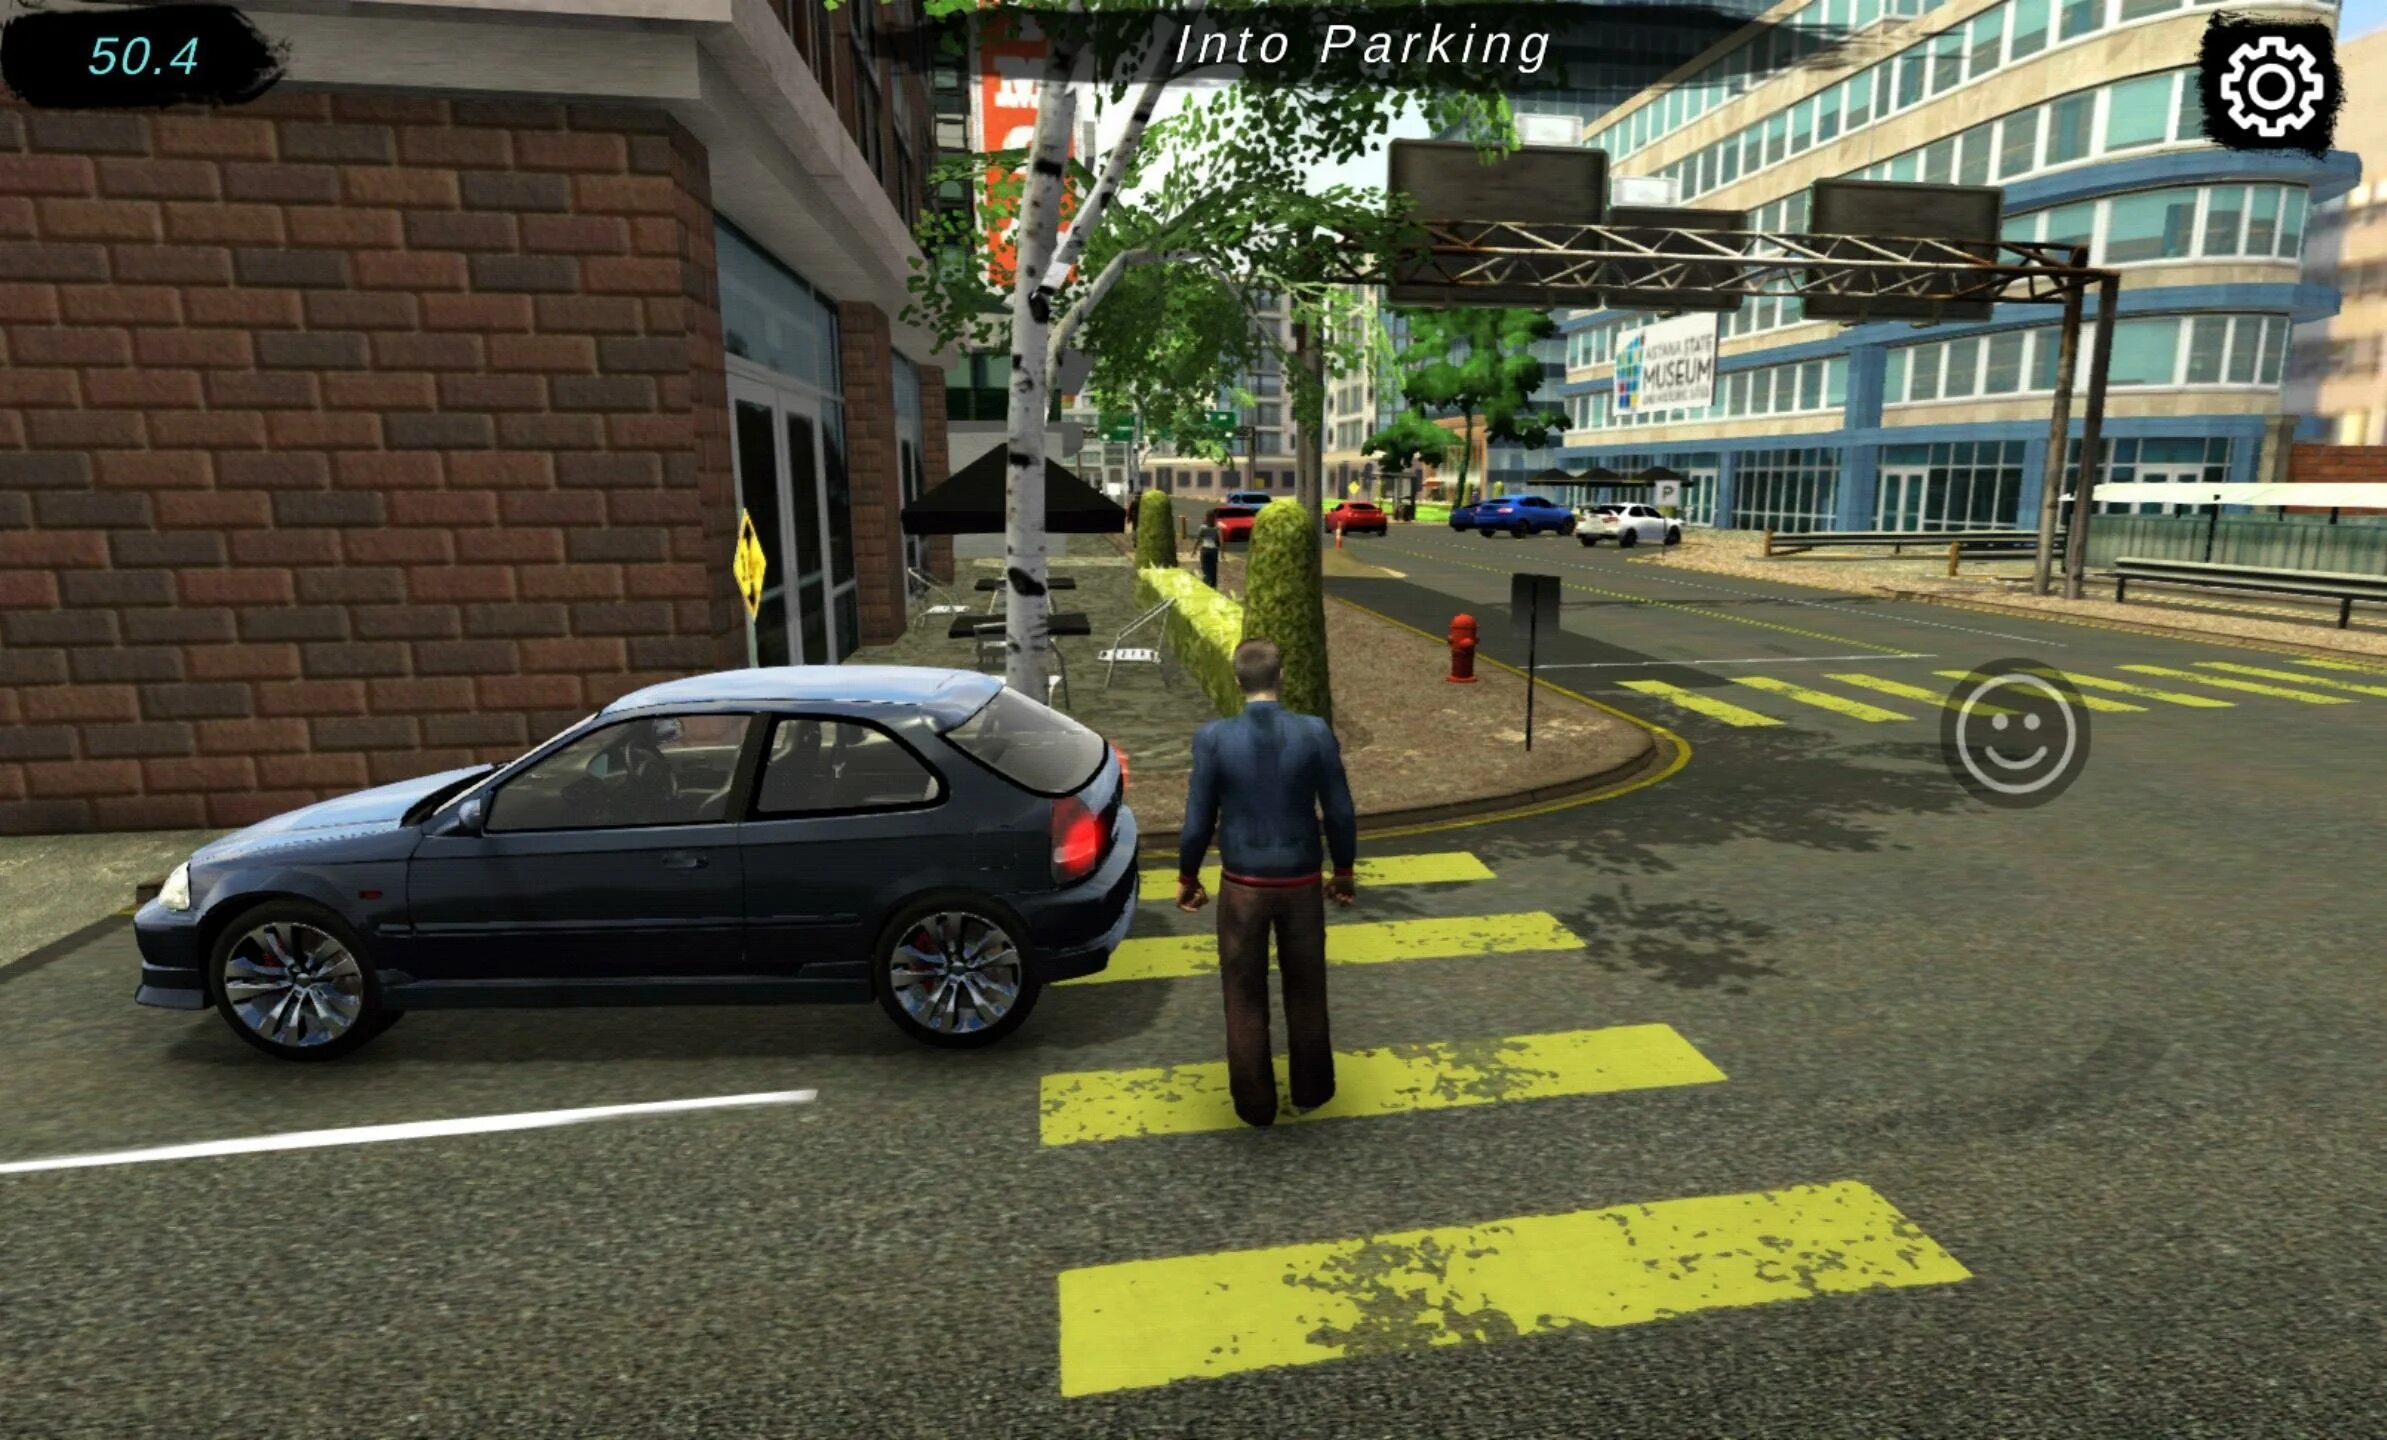 Игра car parking car parking. Car parking Multiplayer 2. Manual gearbox car parking. Car parking Multiplayer мод. Игра car parking играть